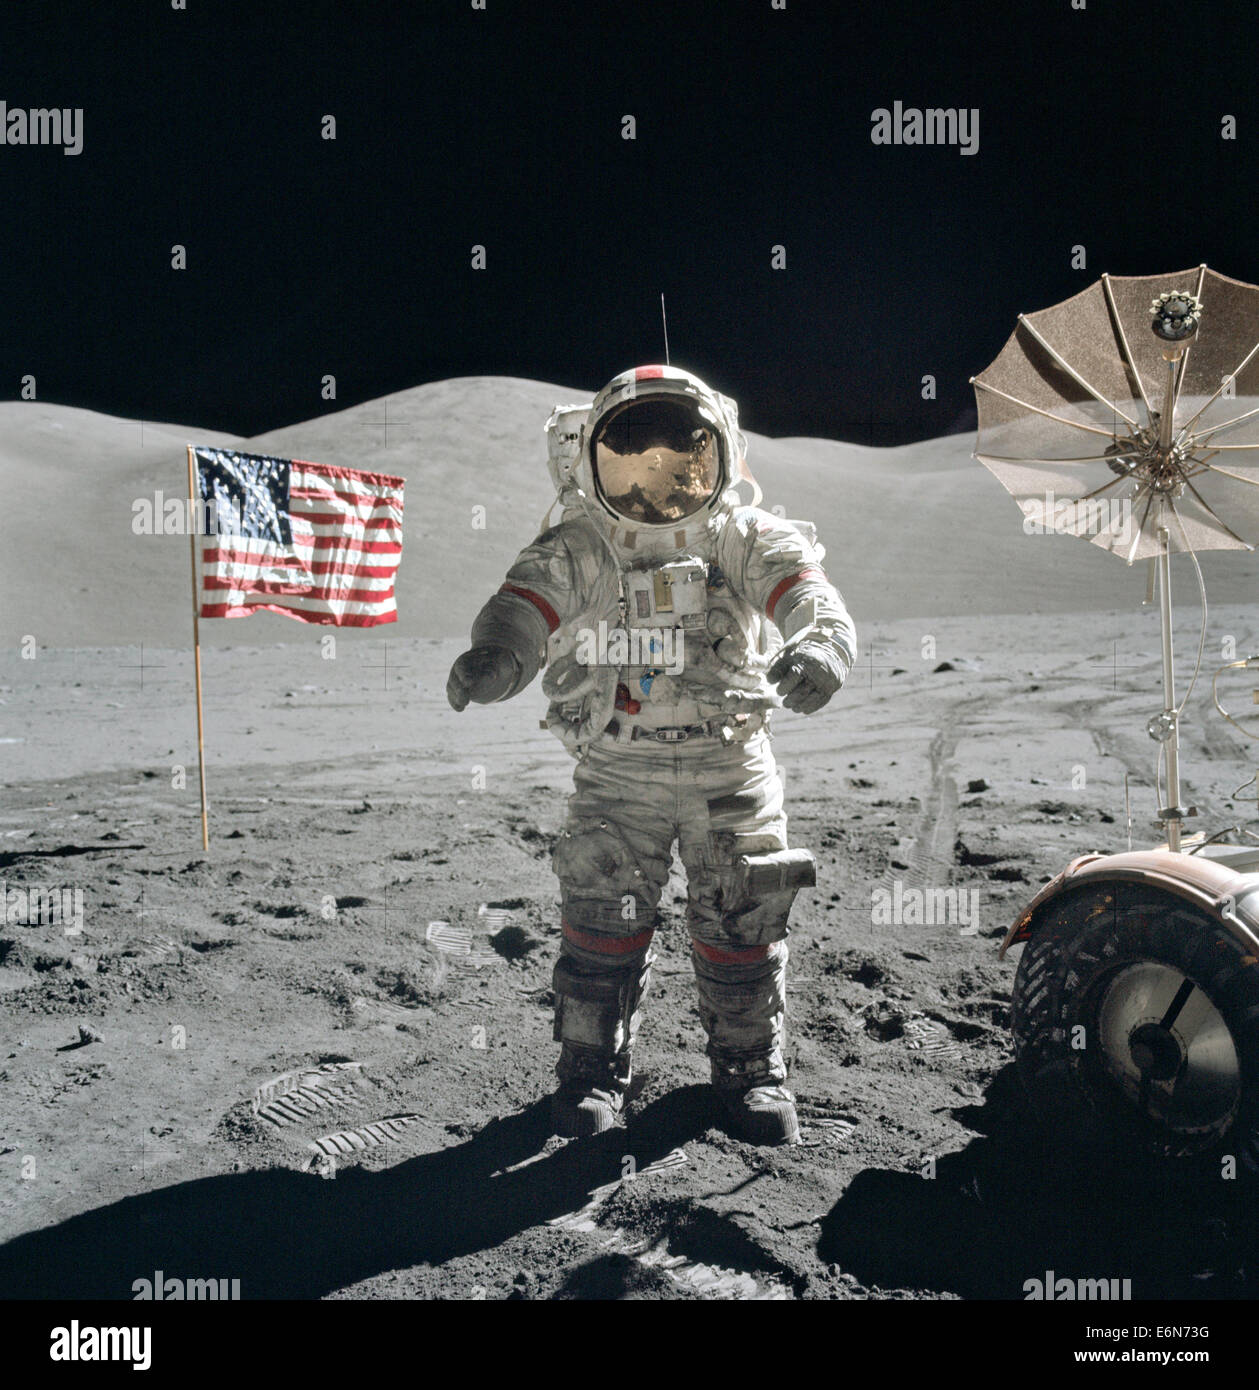 L'astronauta della NASA Eugene Cernan, Commander, Apollo 17, affiancato da una bandiera americana e i loro lunar rover a ombrello antenna ad alto guadagno al Taurus-Littrow landing site Dicembre 13, 1972. La prominente colline scolpite giacciono in background mentre Schmitt di riflessione può essere fatta per Cernan del casco. Mentre gli astronauti Cernan e Jack Schmitt scesi in Challenger per esplorare la regione Taurus-Littrow della luna, astronauta Ronald E. Evans, il pilota del modulo di comando, è rimasto con il comando Service Module "America" in lunar-orbita. Foto Stock